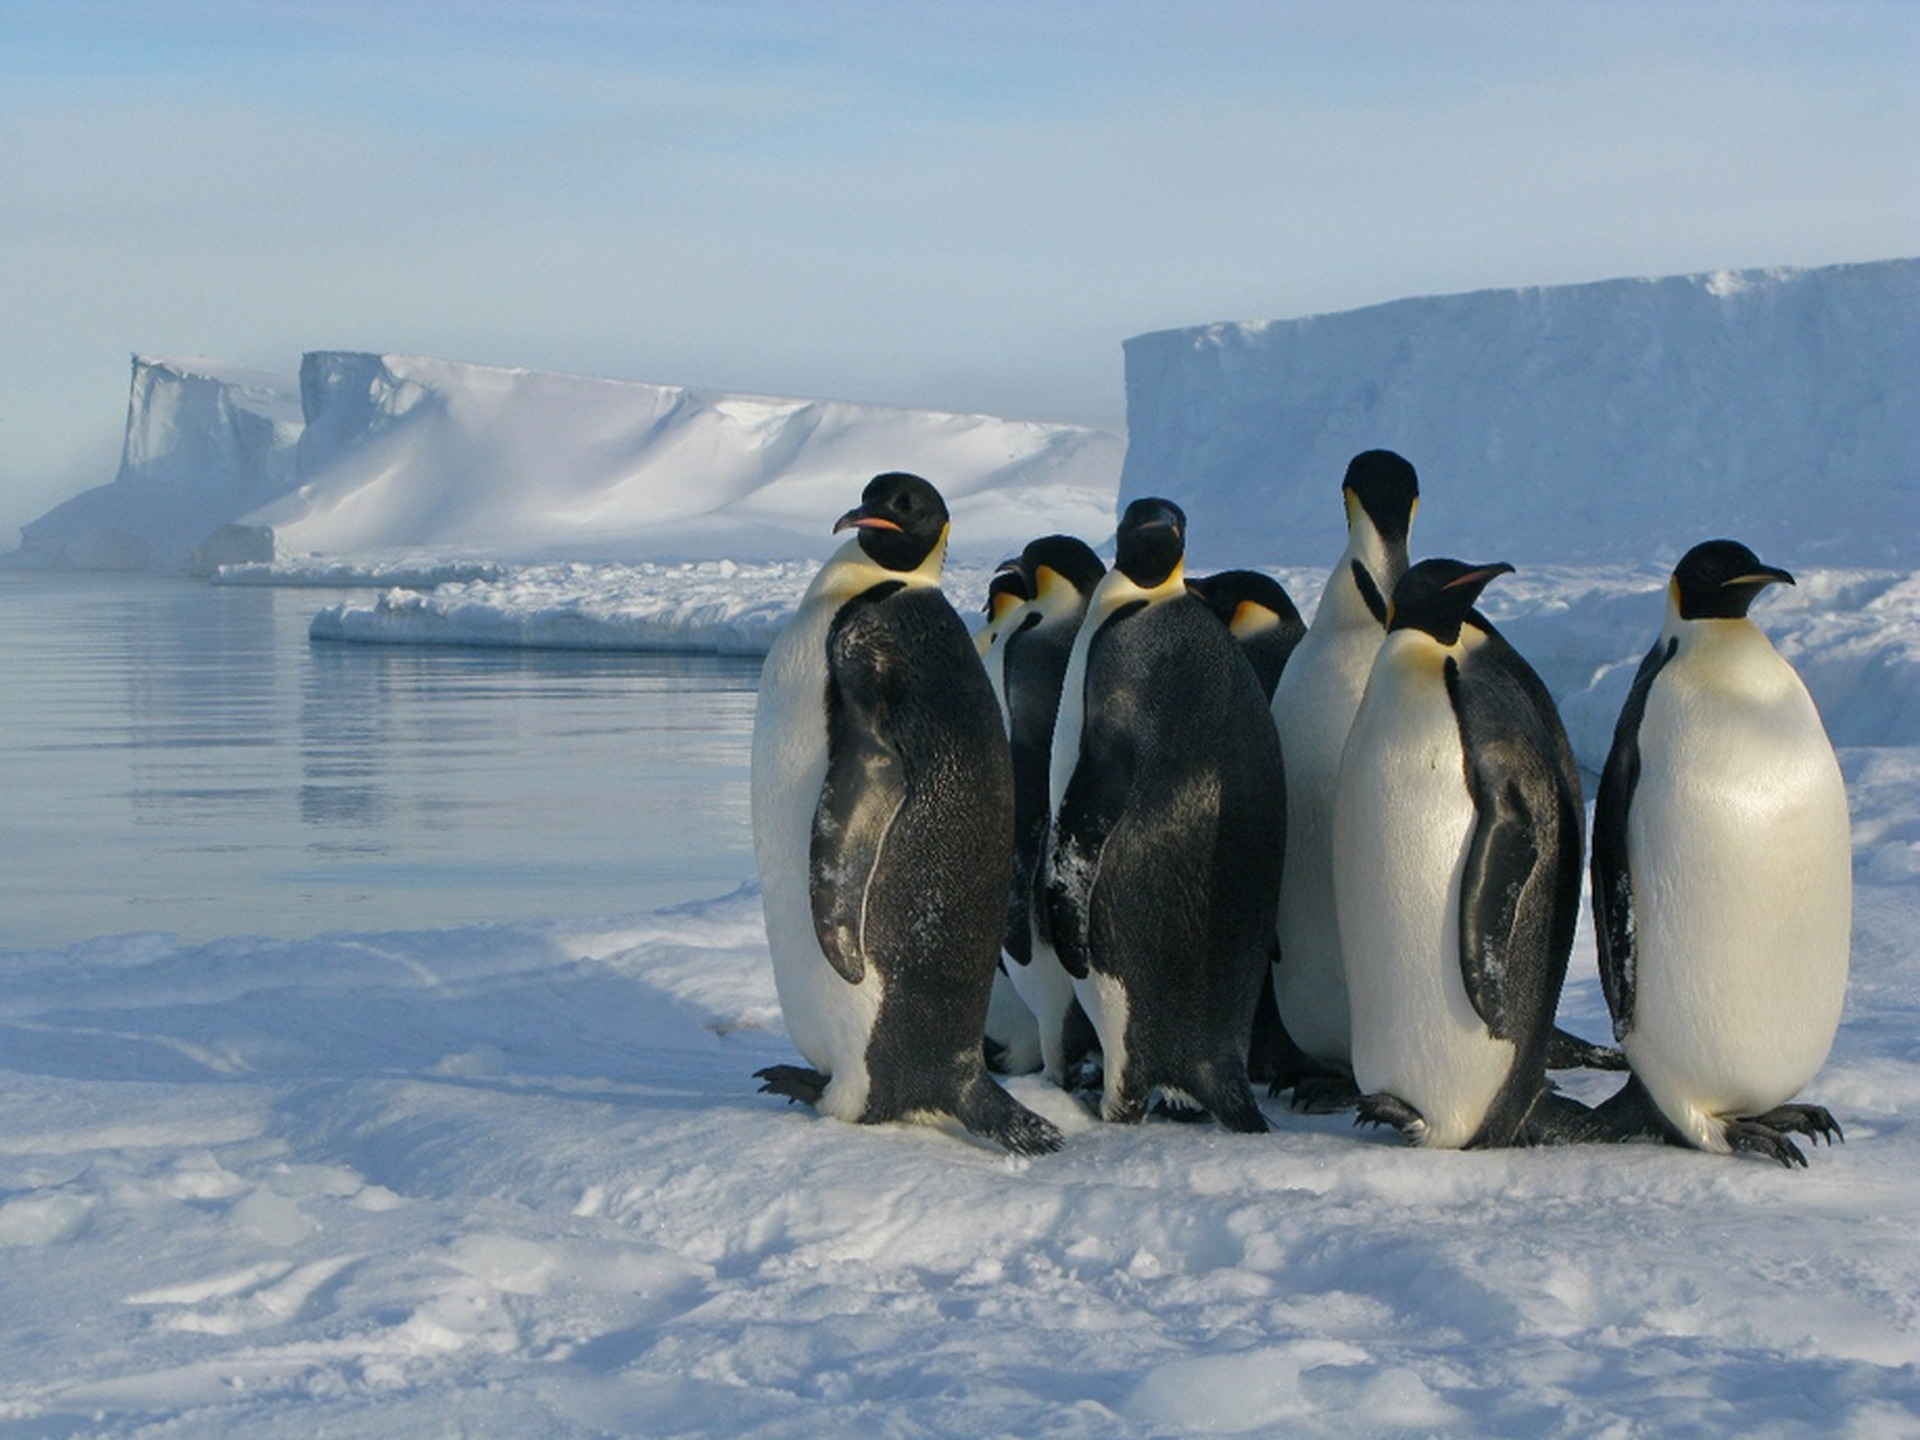 Фотографування екскрементів пінгвінів мало важливе наукове значення